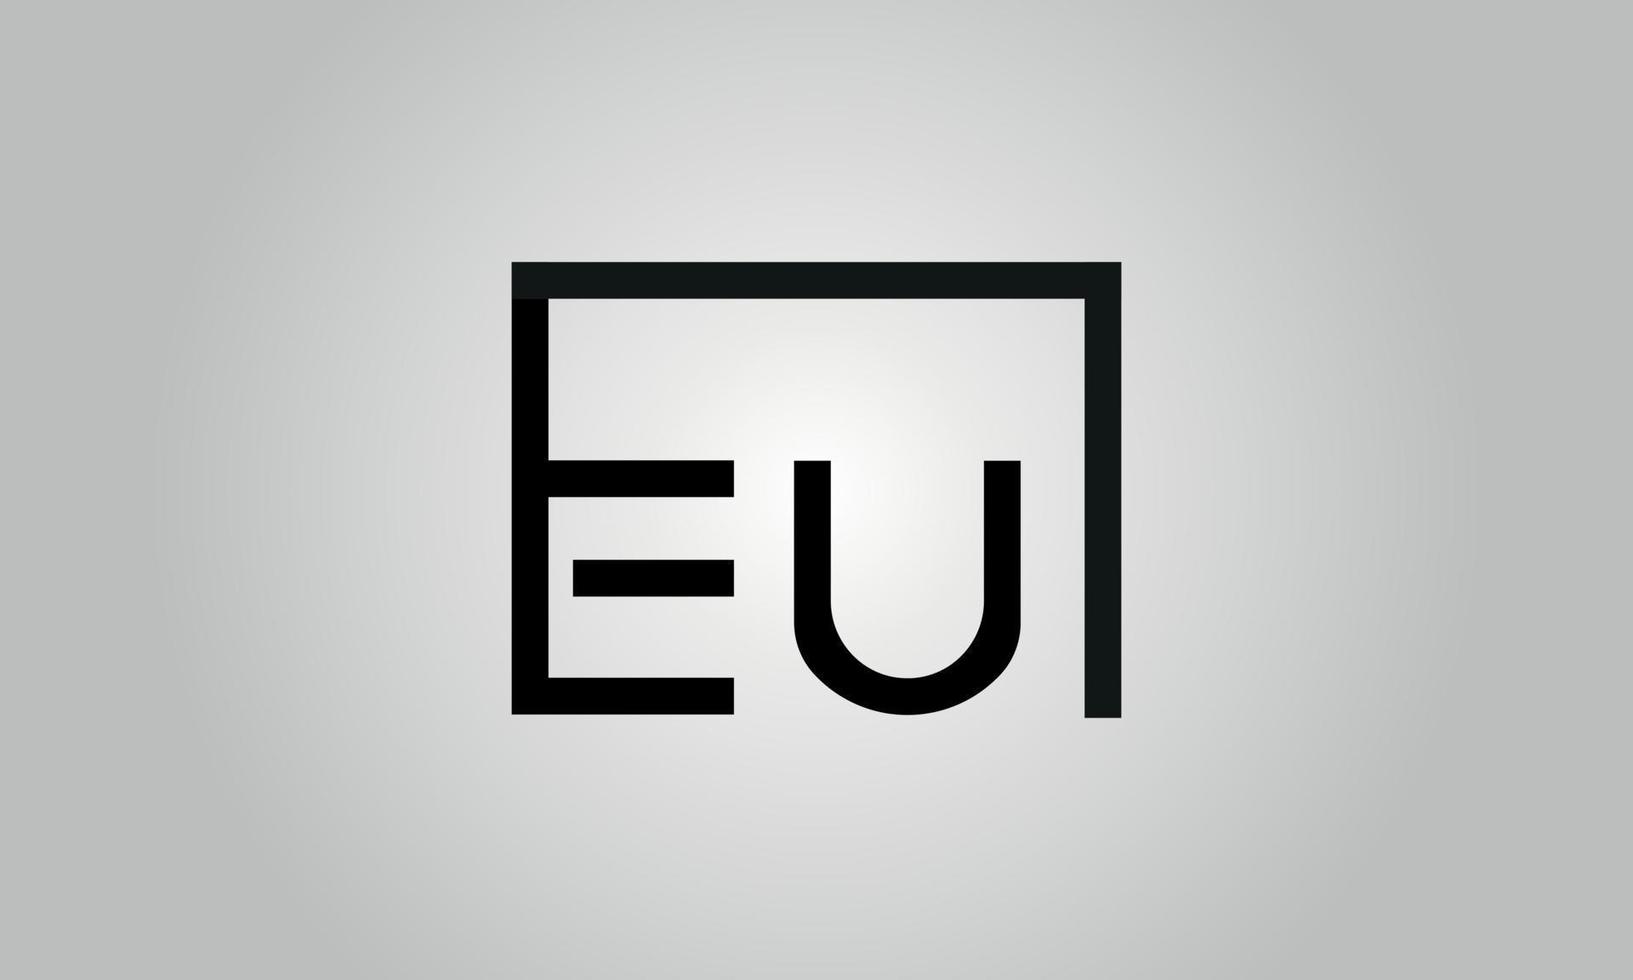 Buchstabe eu-Logo-Design. eu-logo mit quadratischer form in schwarzen farben vektor kostenlose vektorvorlage.